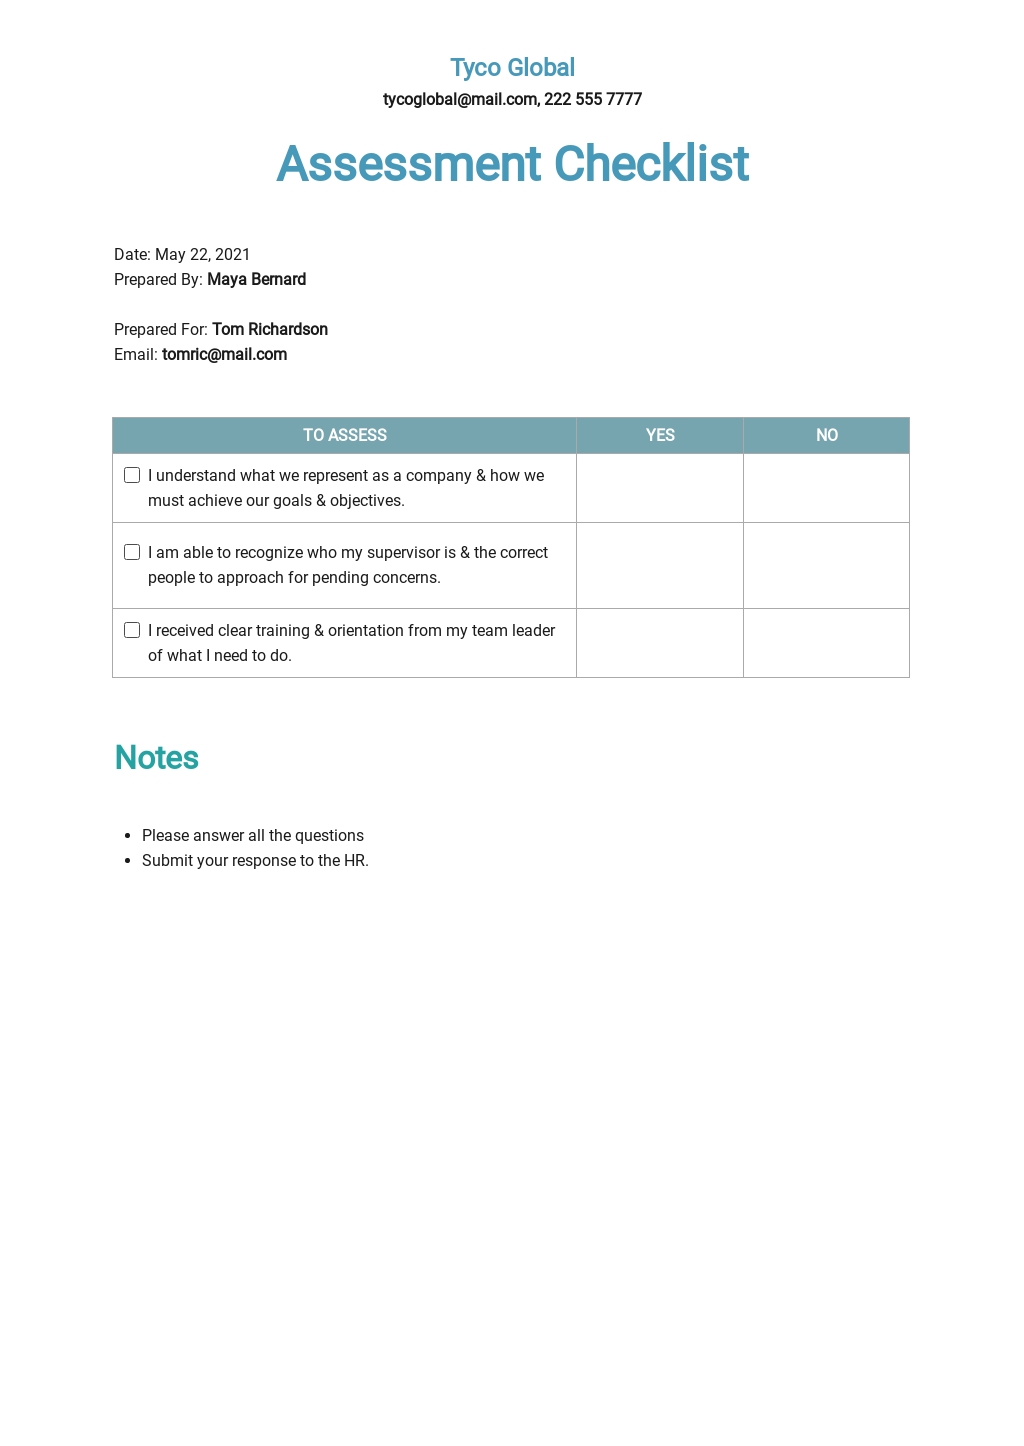 Assessment Checklist Template.jpe